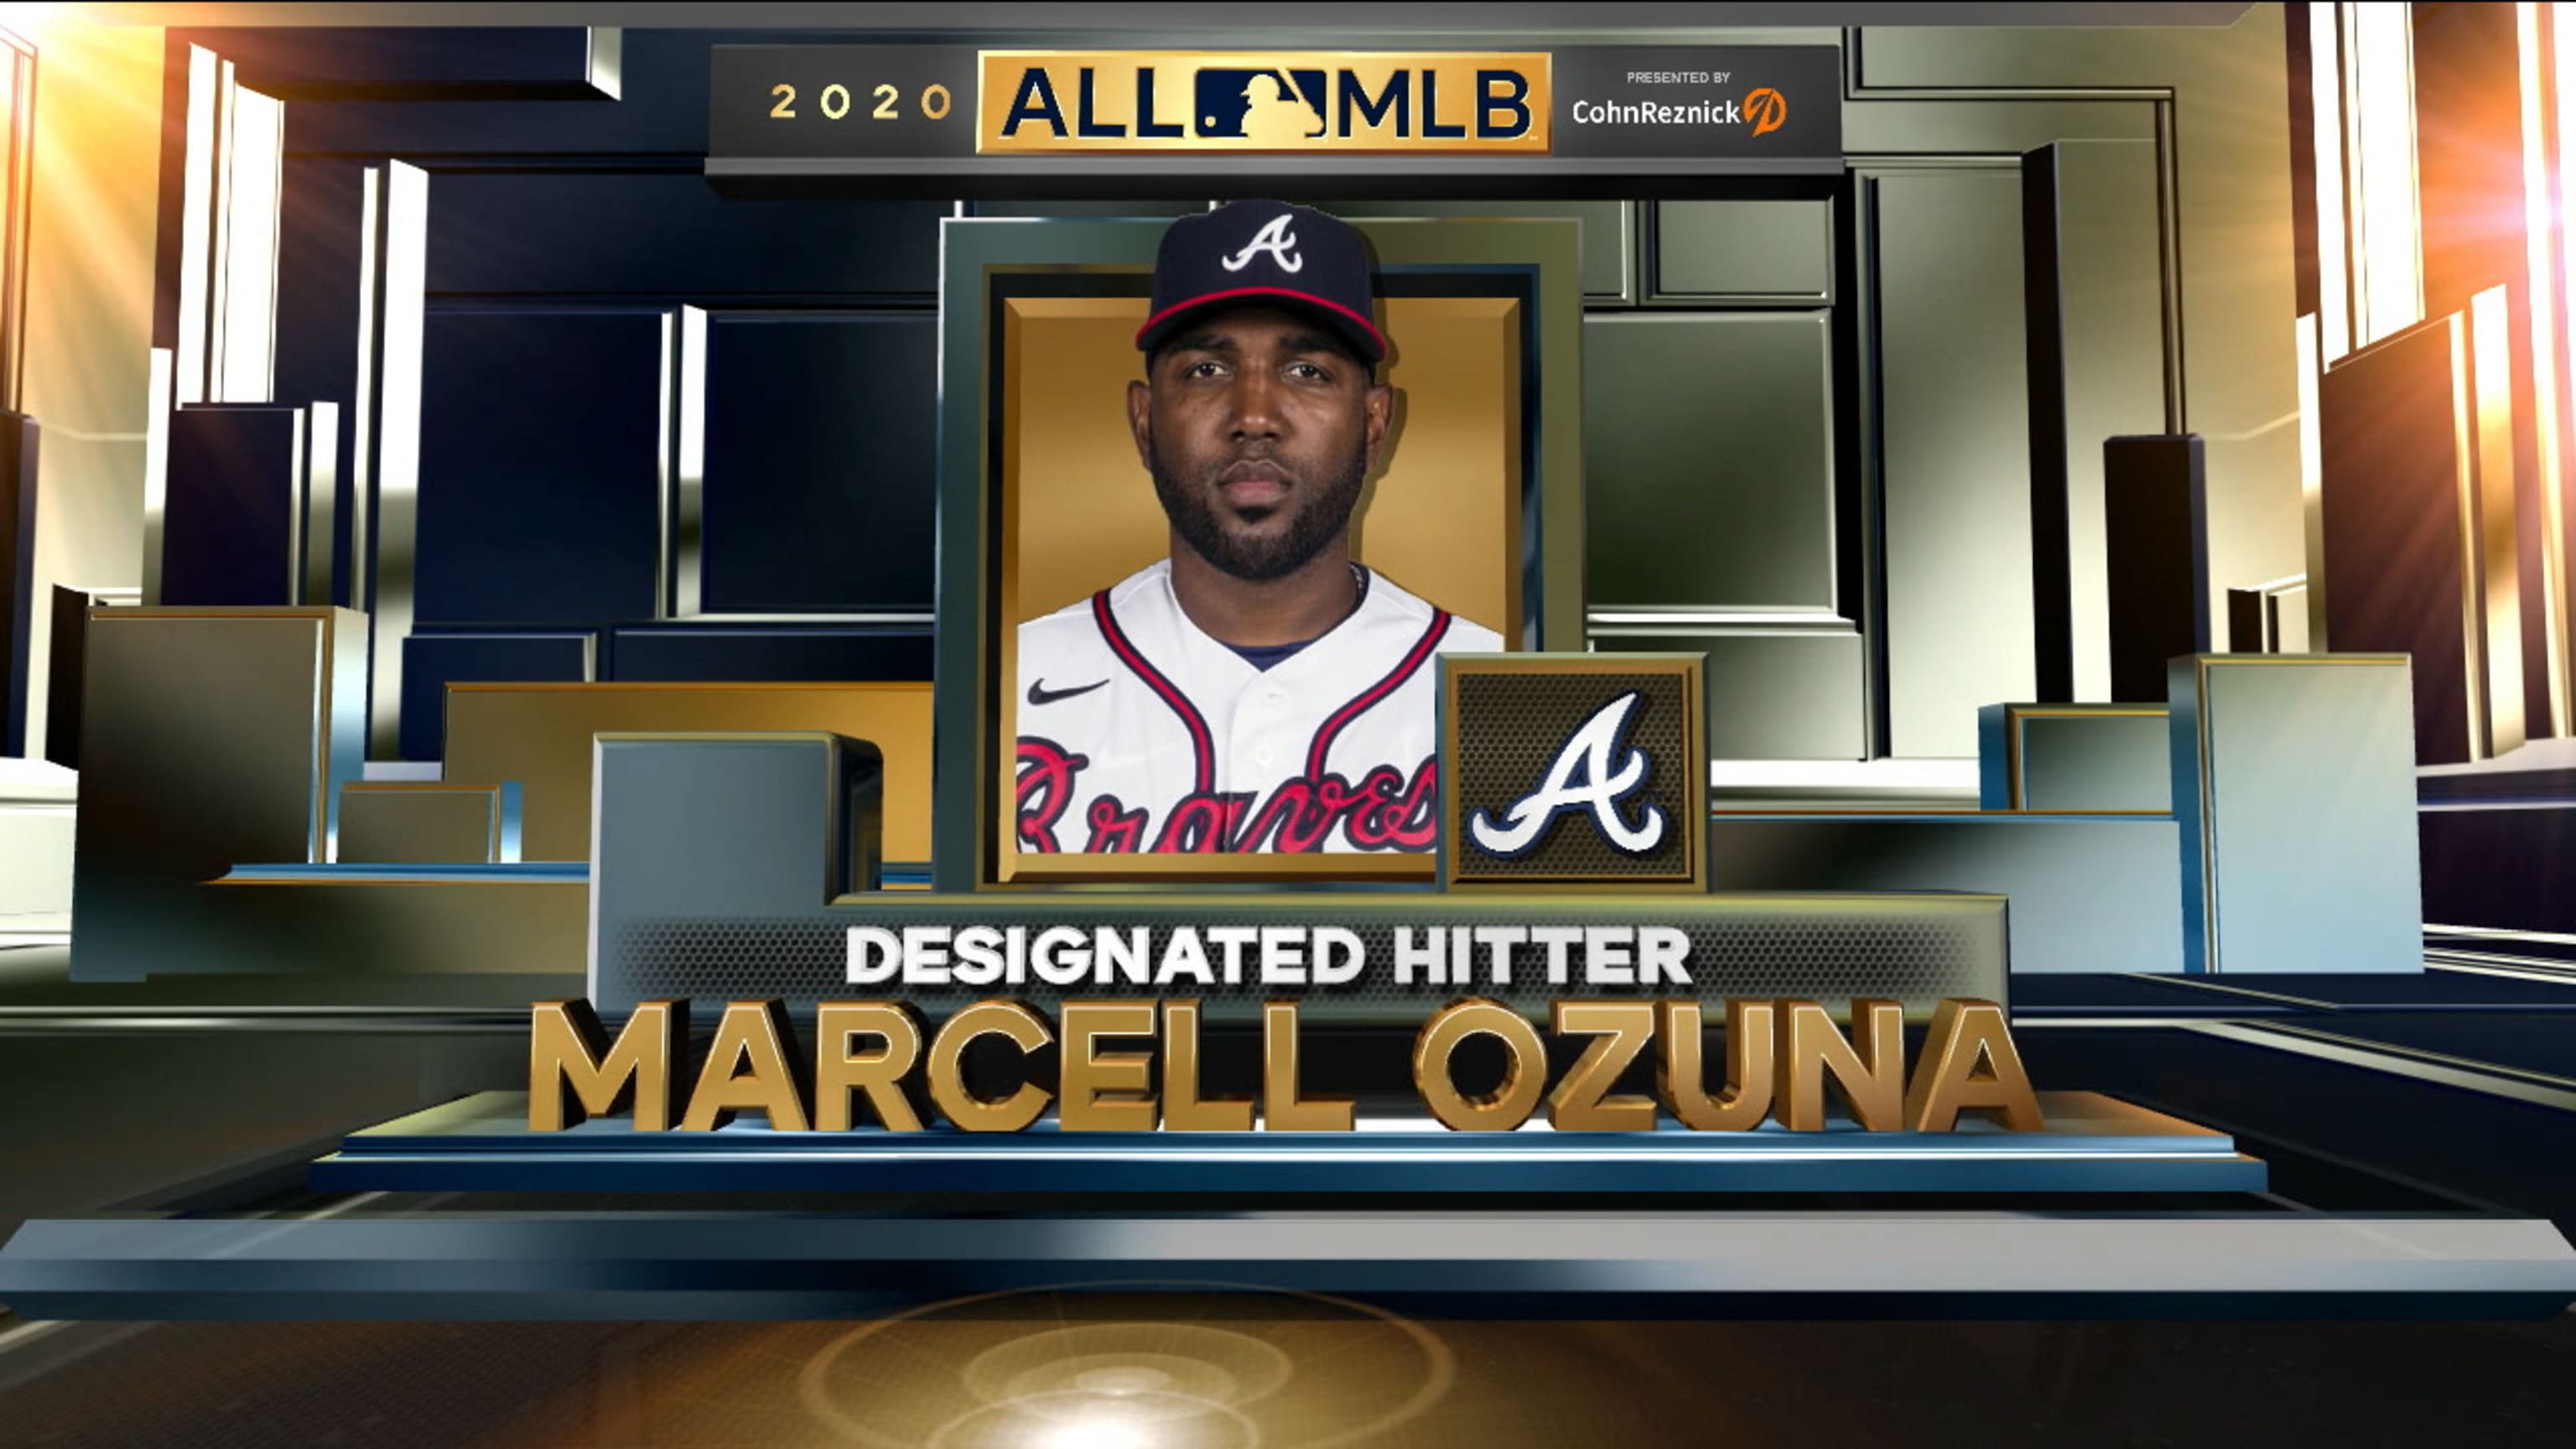 Ozuna is All-MLB First Team DH